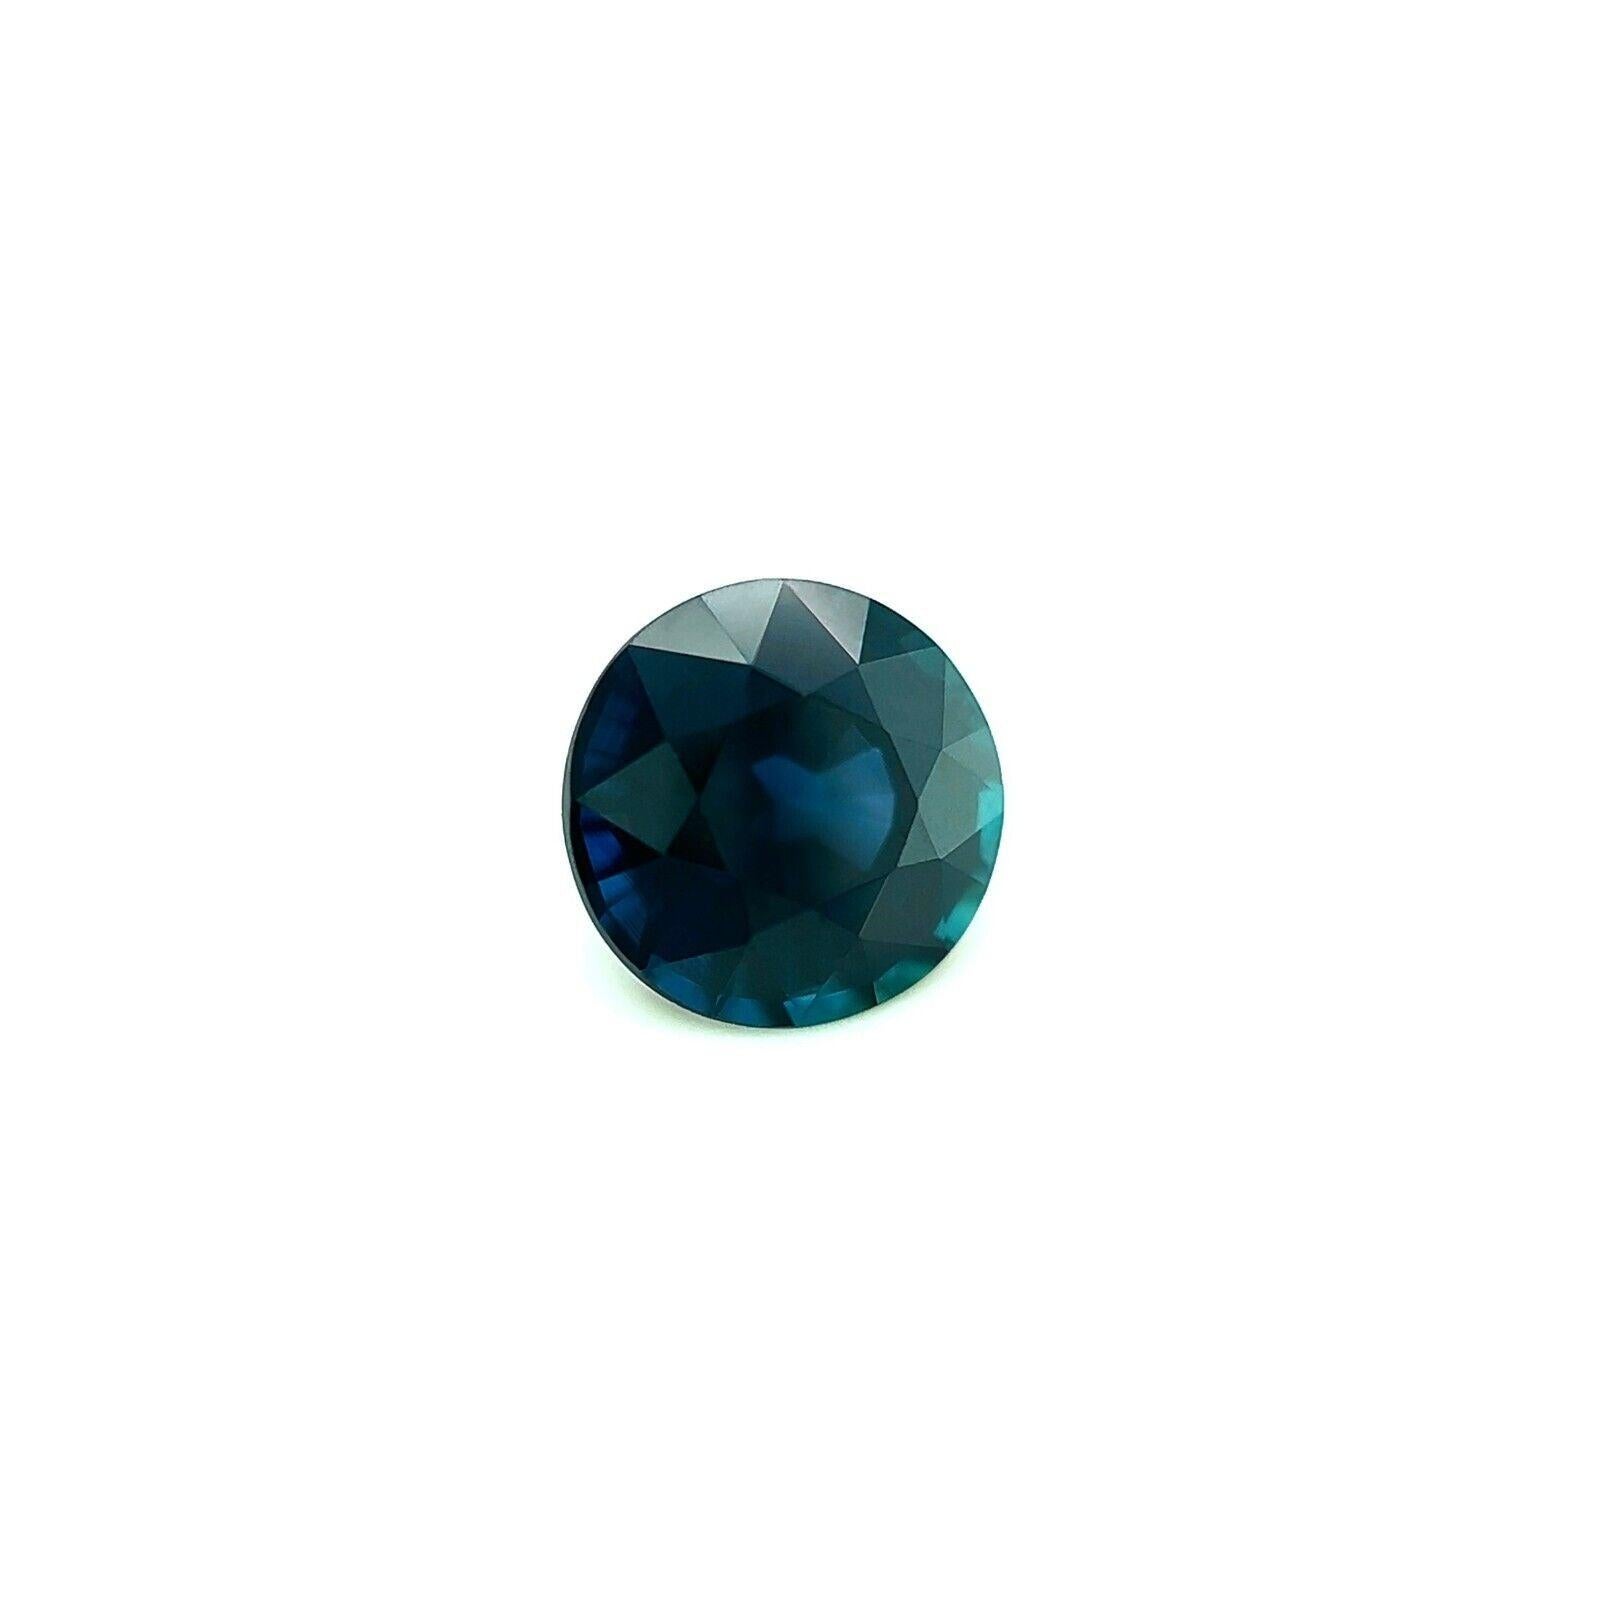 Natürlicher Ceylon Saphir 1.19Ct Tiefblau Rundschliff Lose Seltener Edelstein VVS
 
 Natürlicher tiefblauer Ceylon-Saphir Edelstein.
 1,19 Karat mit einer schönen tiefblauen Farbe und ausgezeichneter Reinheit. Sehr sauberer Stein. VVS.
 Außerdem hat